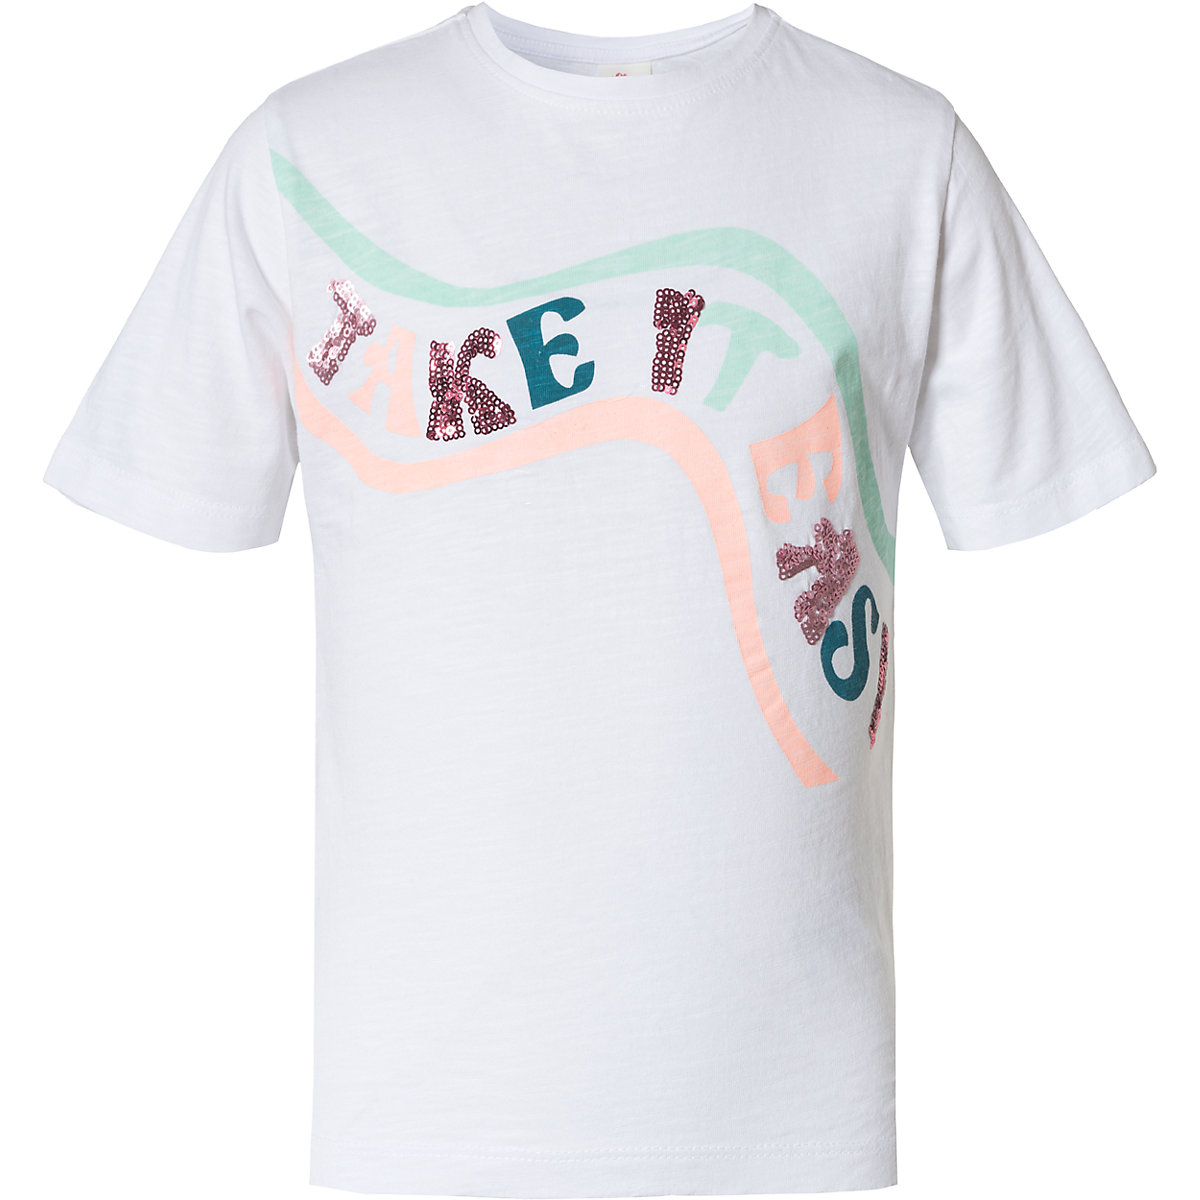 s.Oliver T-Shirt für Mädchen weiß